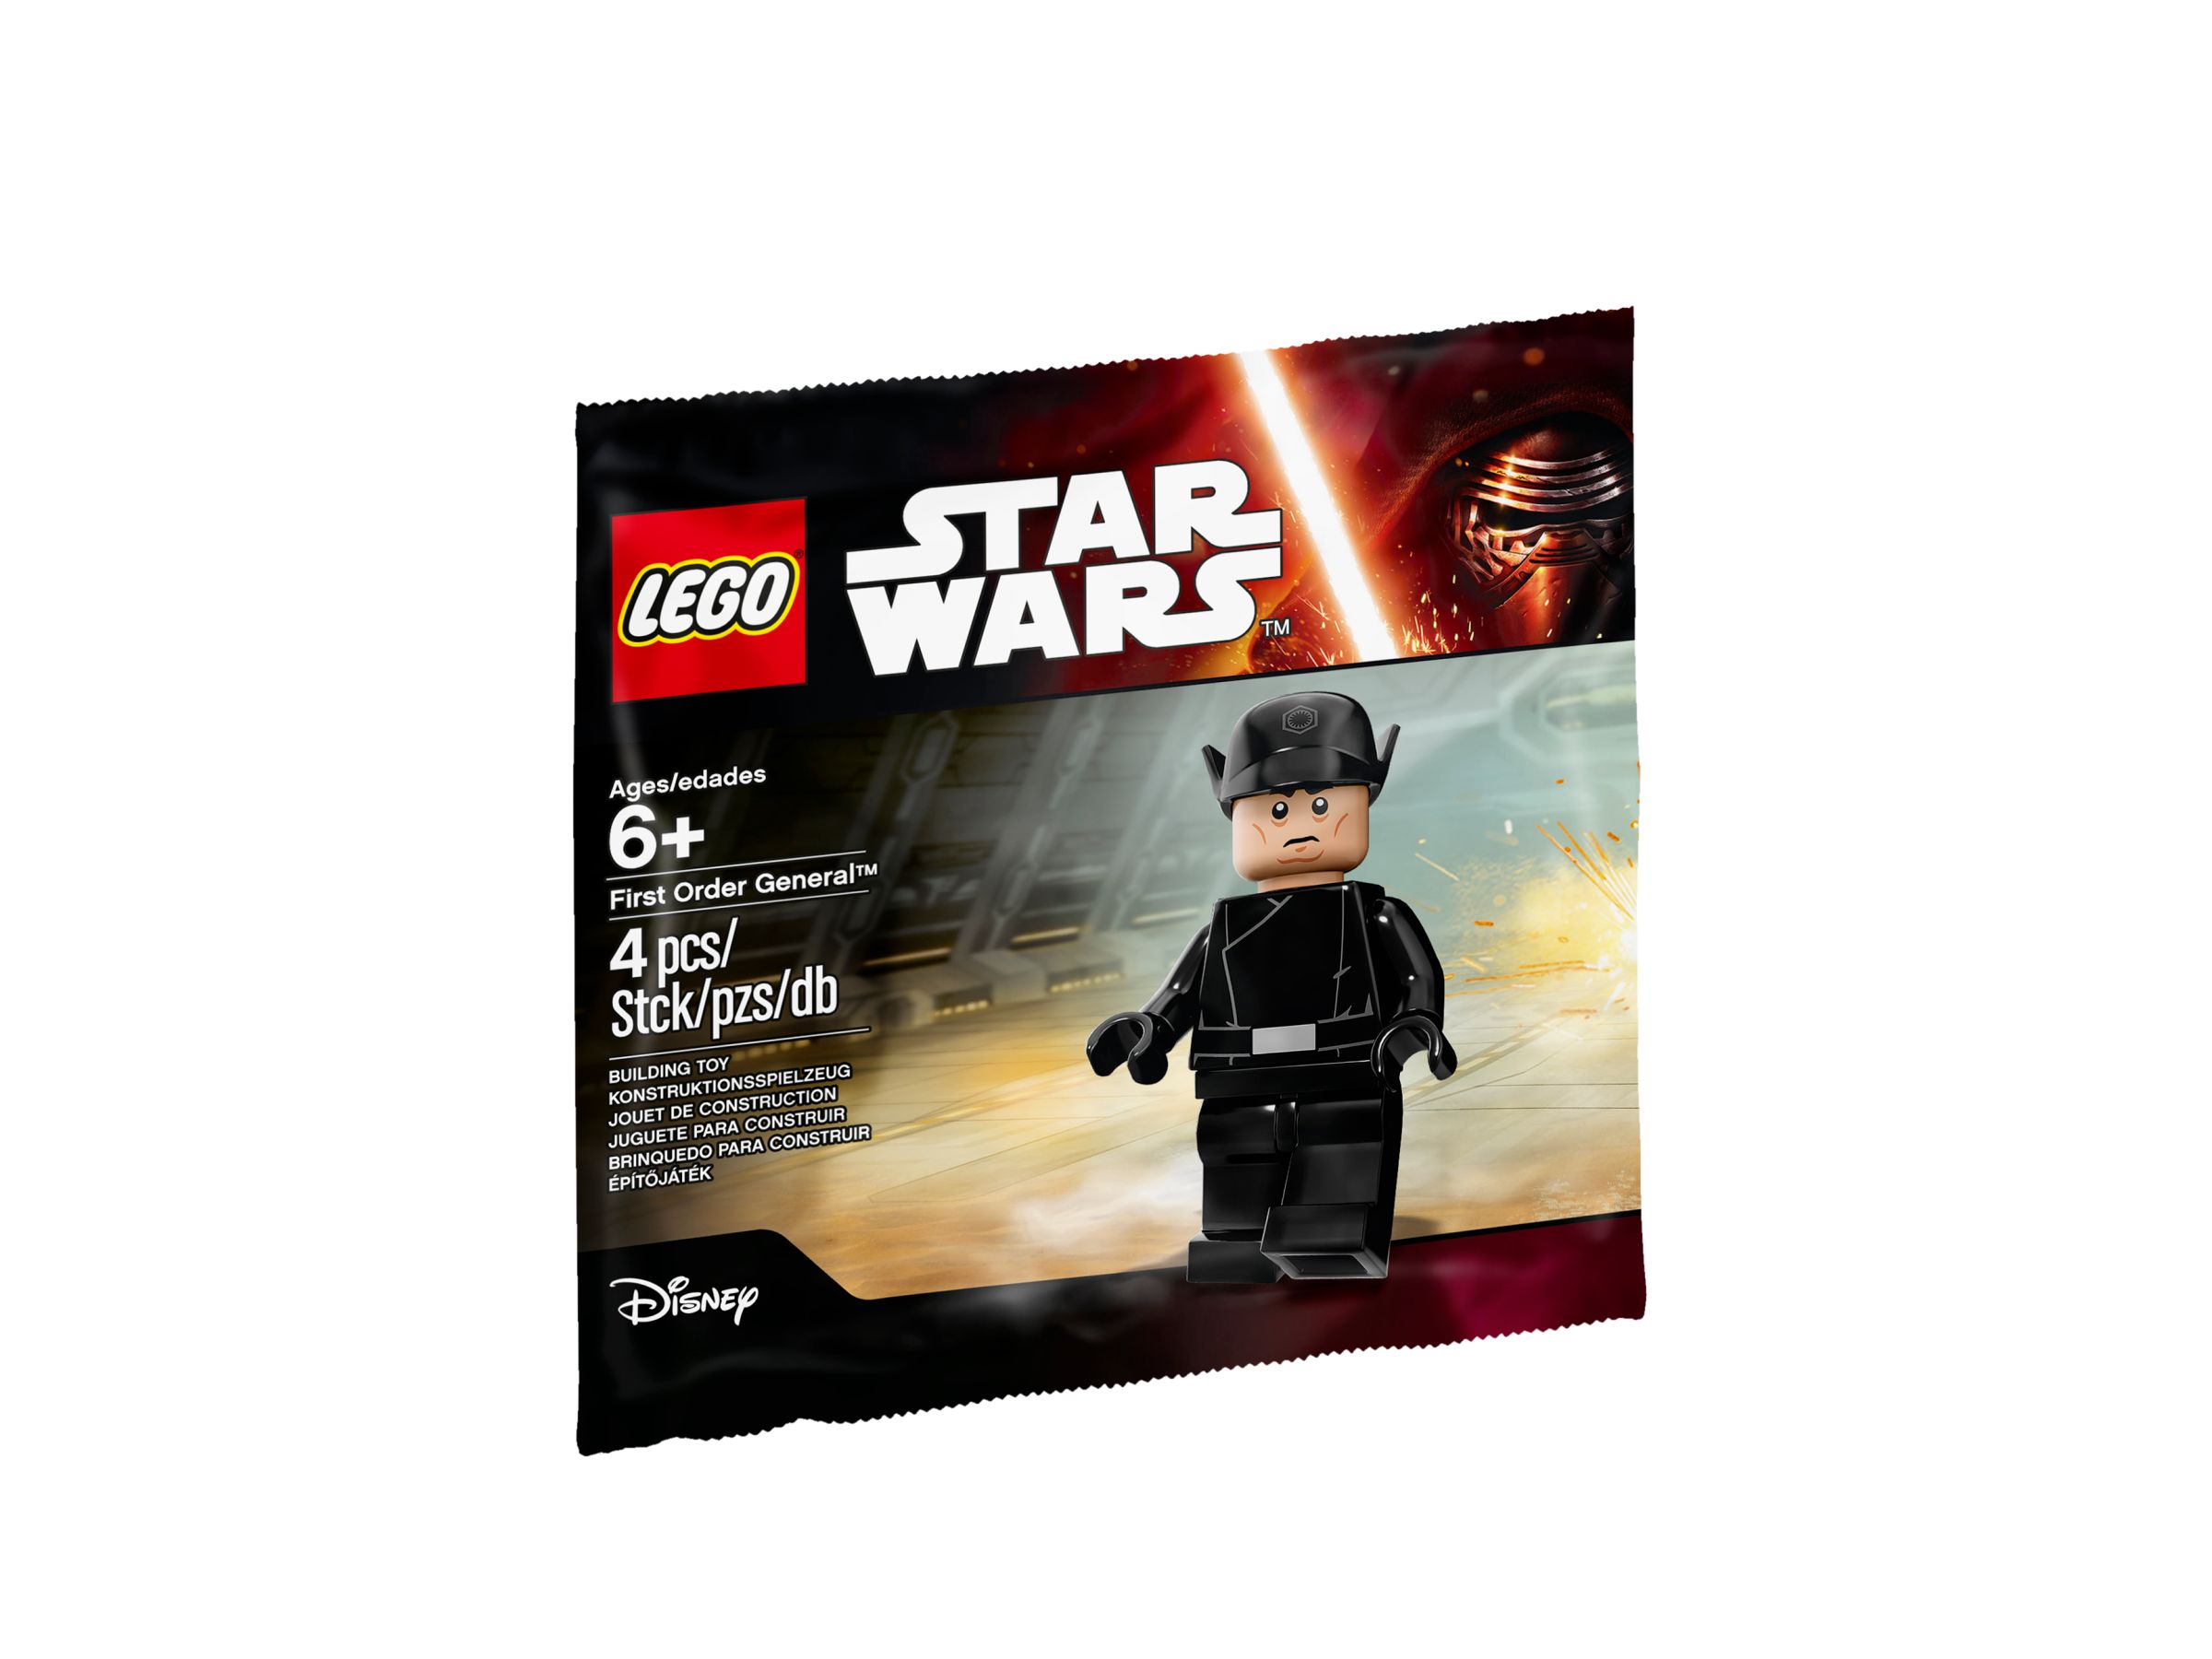 LEGO Star Wars 5004406 LEGO® Star Wars™ First Order General™ LEGO_5004406_x.jpg